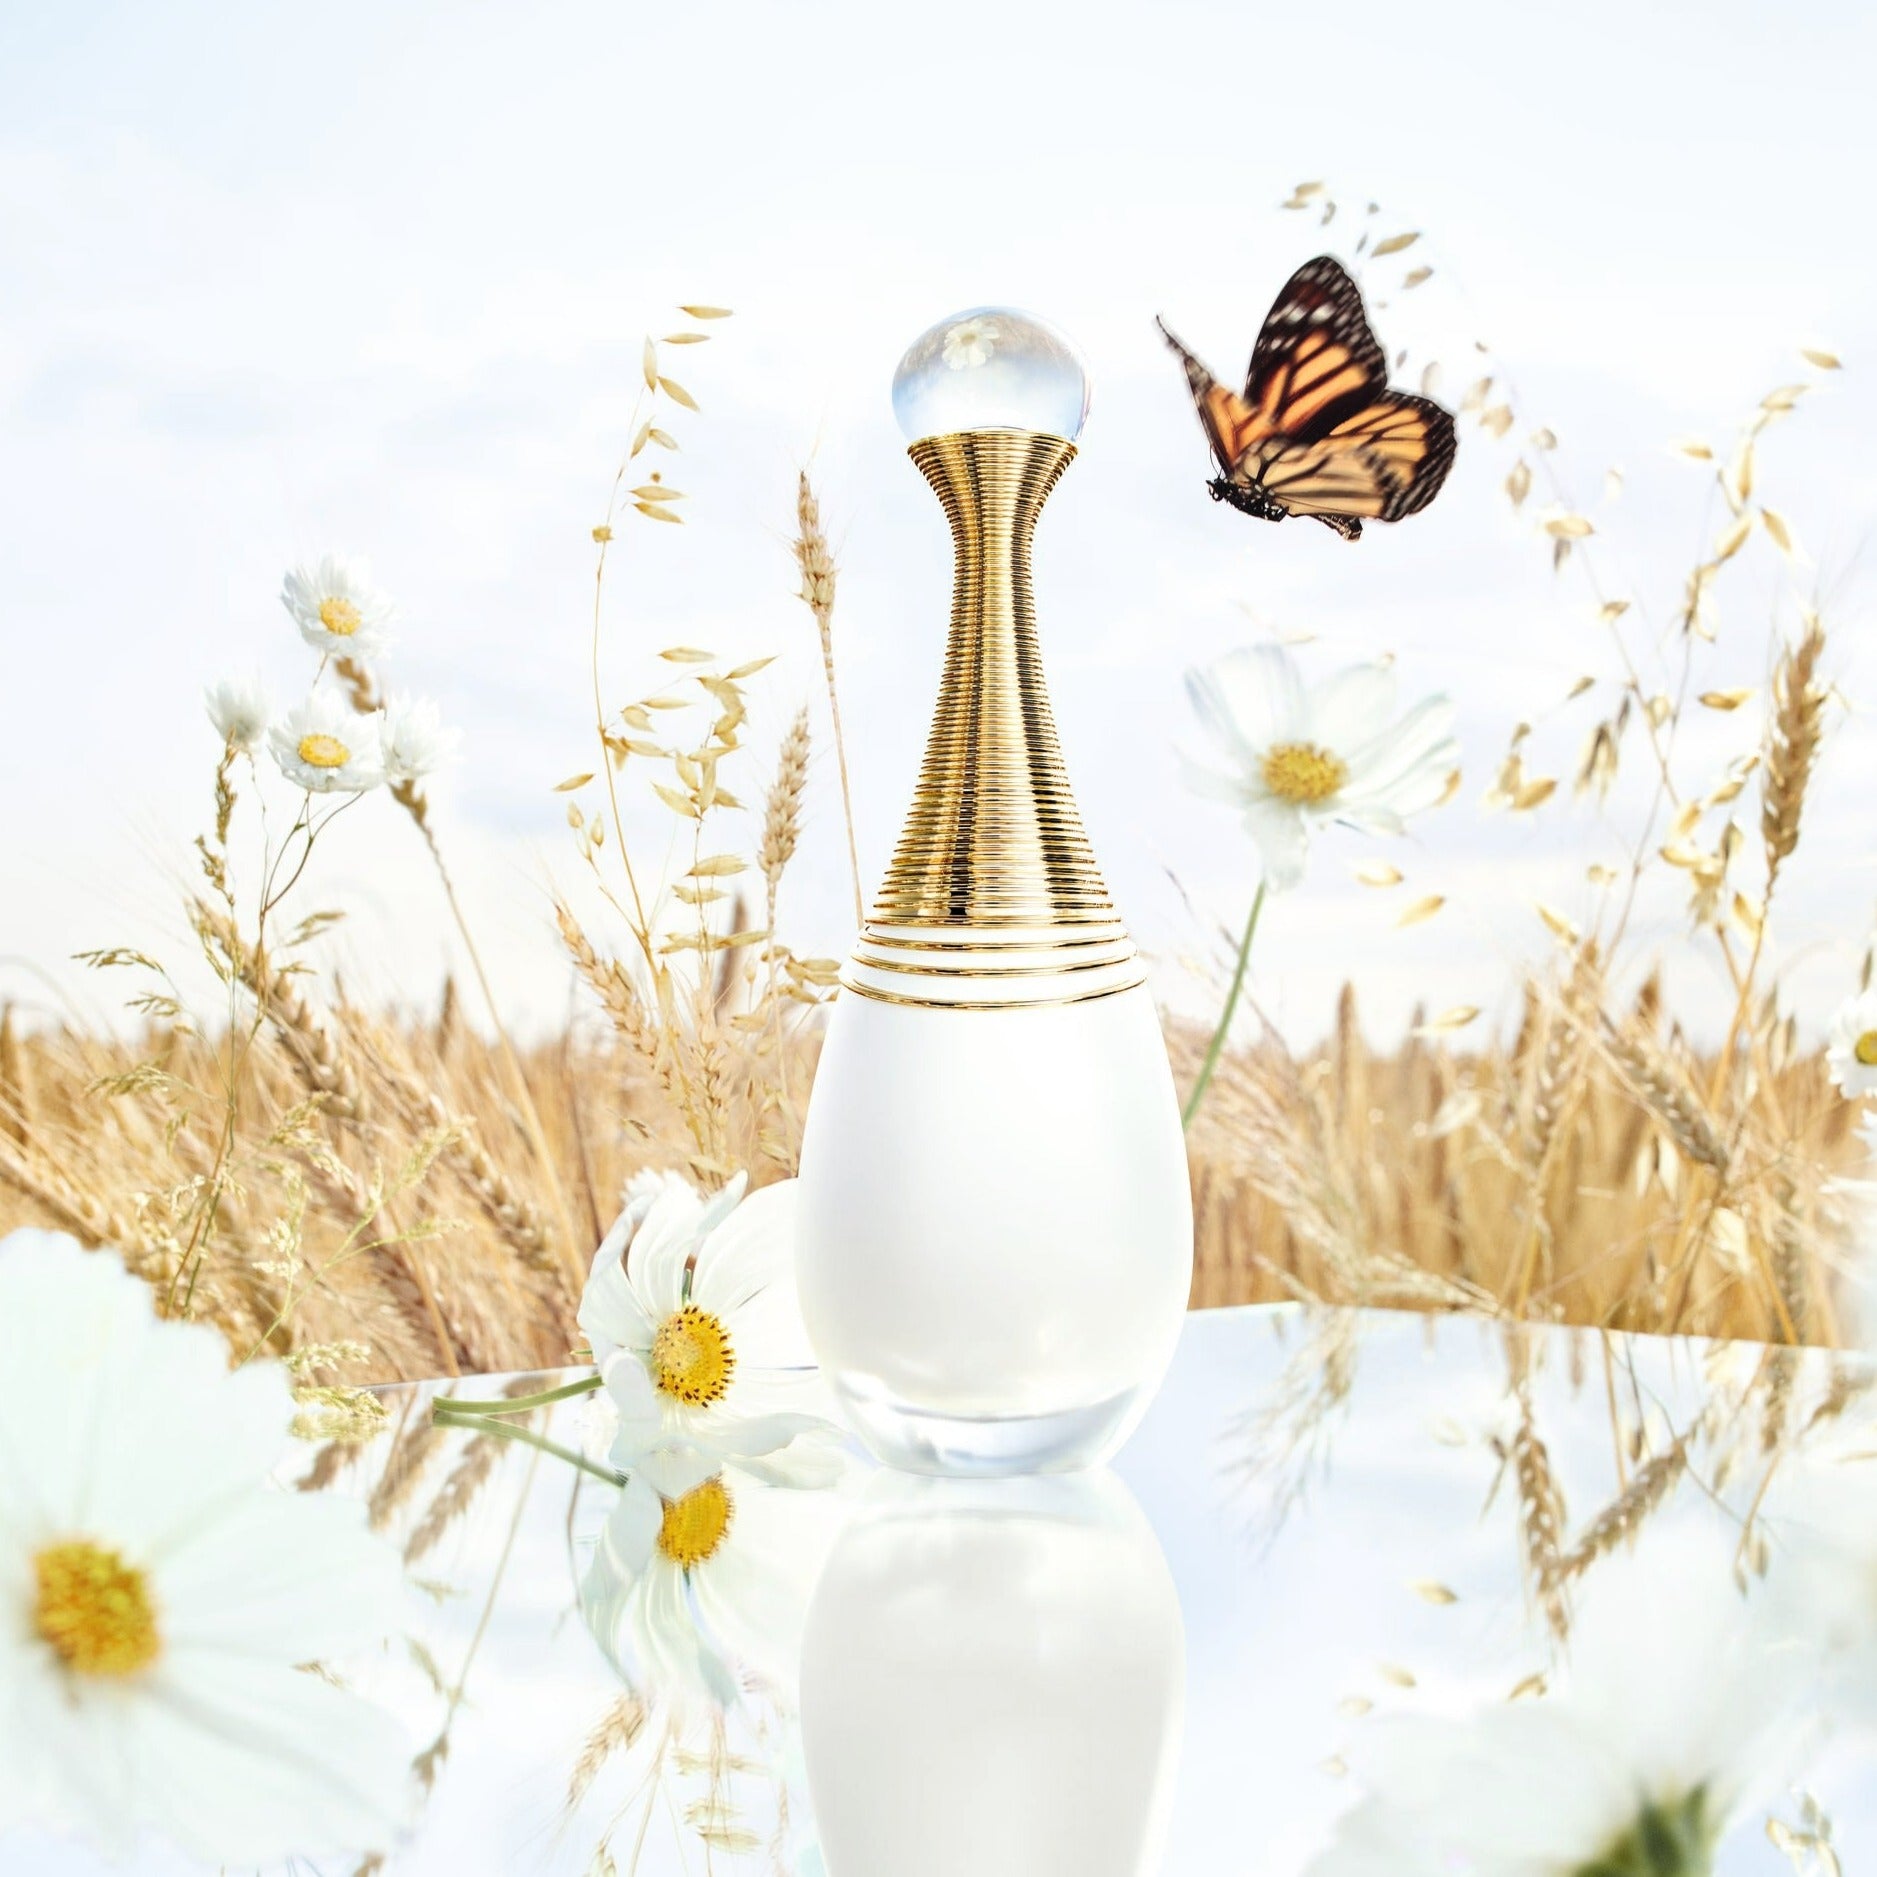 J'ADORE PARFUM D'EAU | Alcohol-free eau de parfum - floral notes